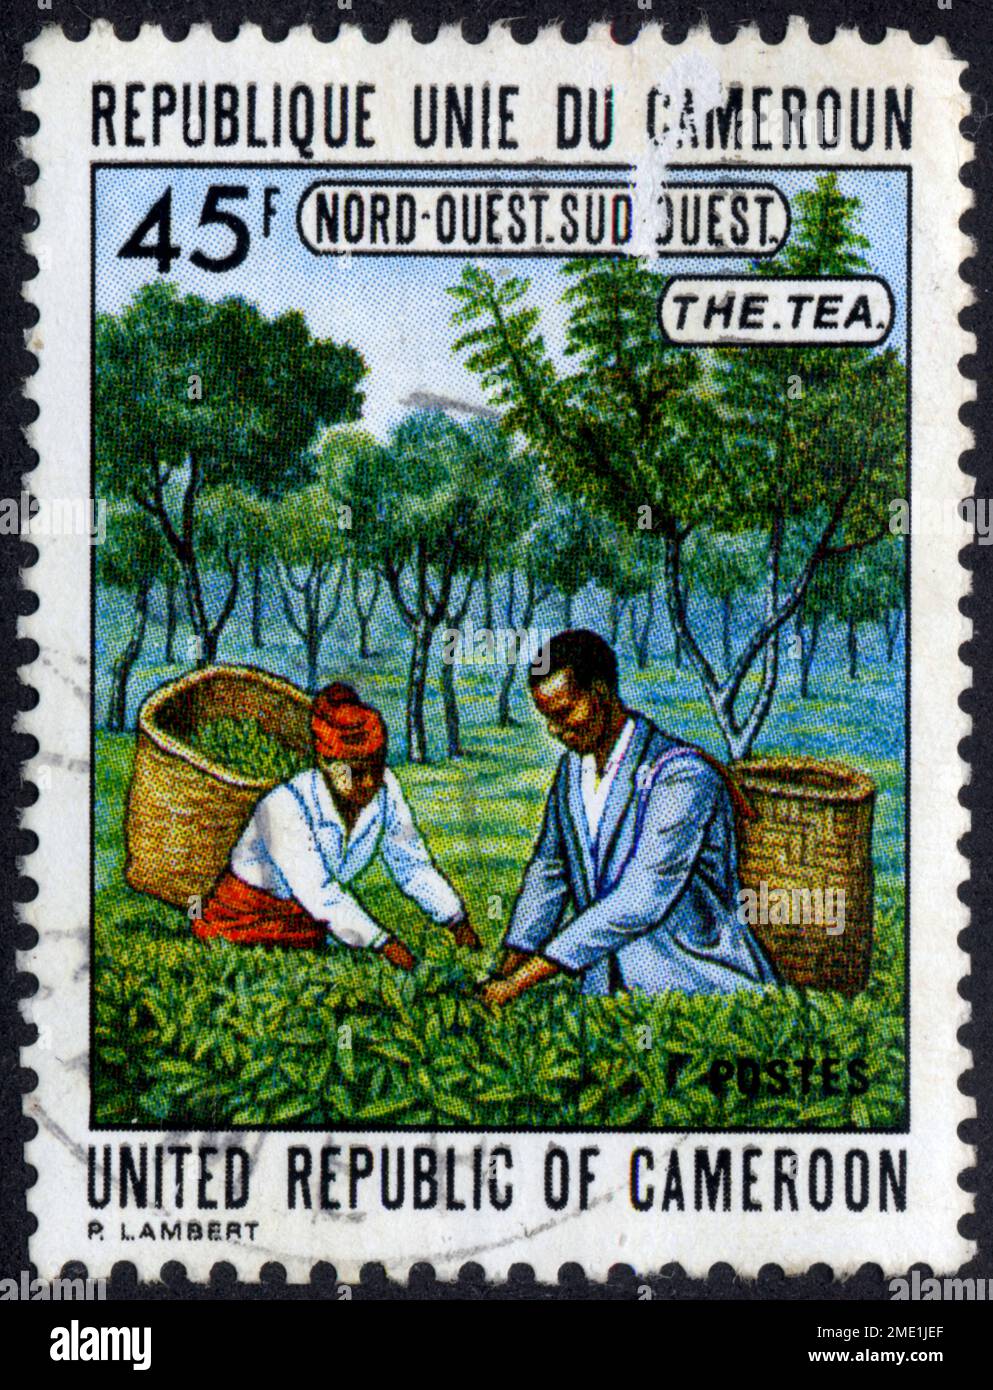 TIMBRE OBLITÉRÉ THE TEA. RÉPUBLIQUE UNIE DU CAMEROUN. NORD-OUEST. SUD-OUEST. UNITED REPUBLIC OF CAMEROON. 45  F Stock Photo